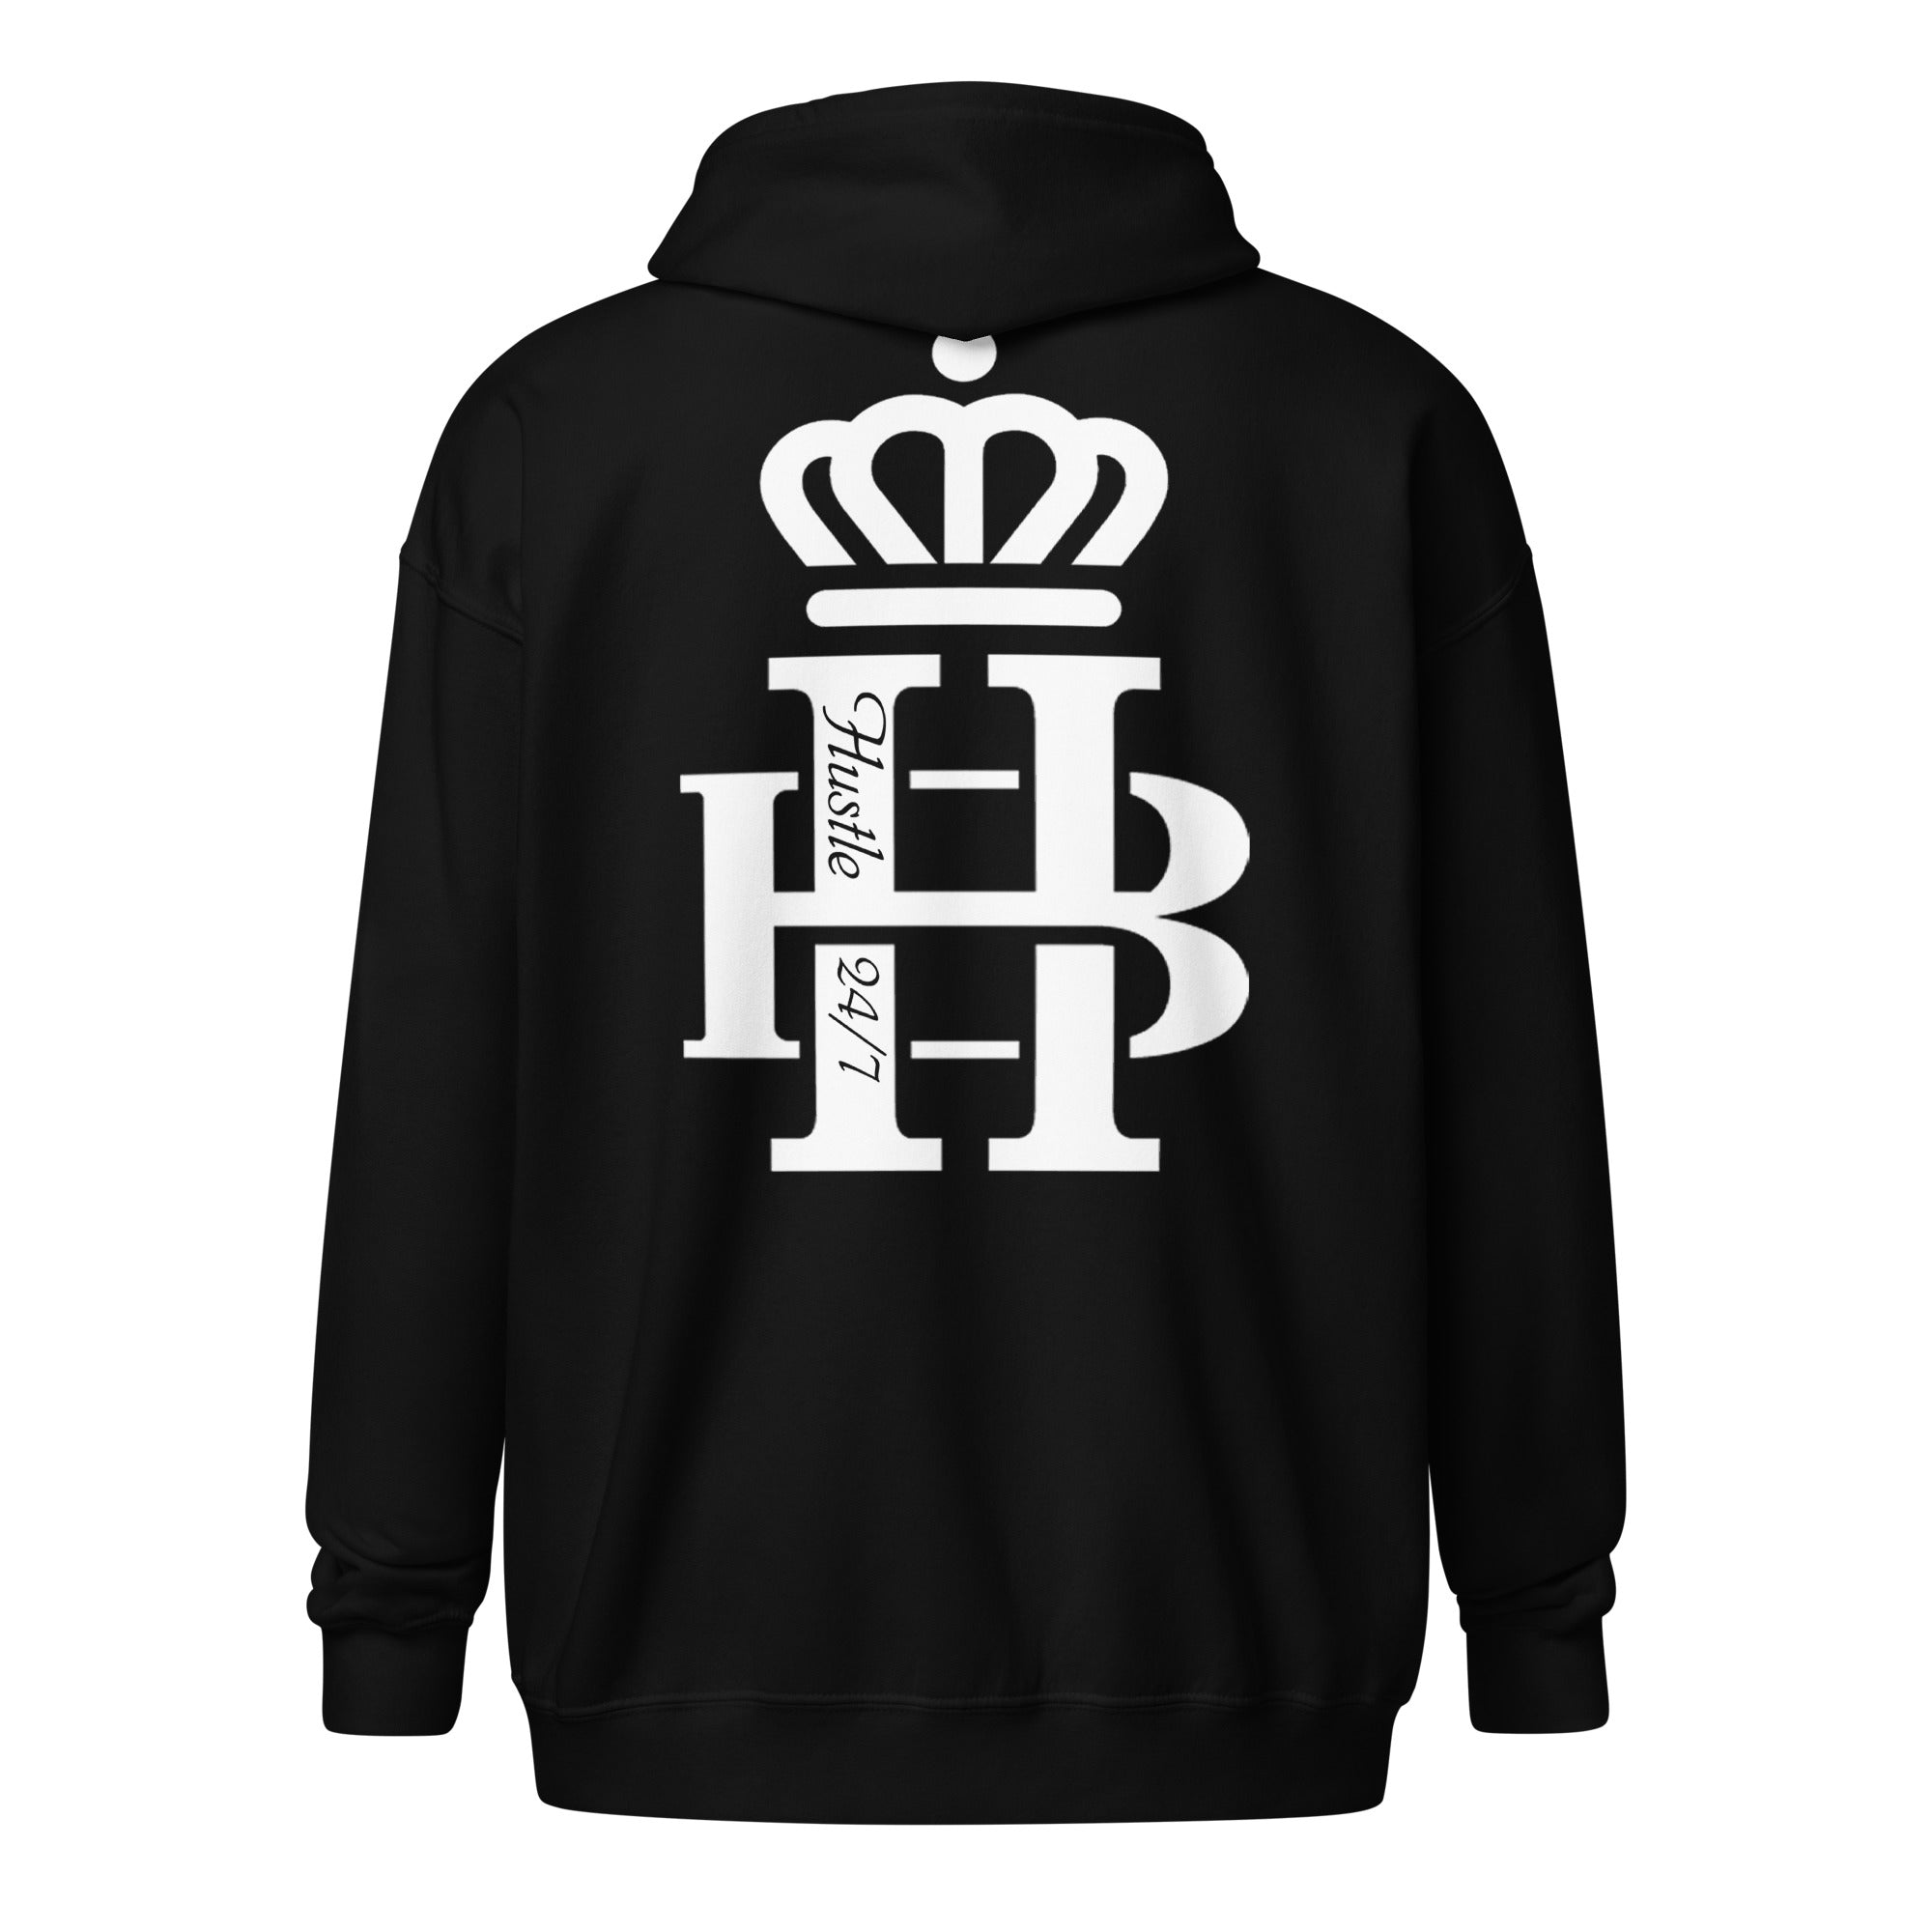 HB Logo 24/7 : Unisex heavy blend zip hoodie